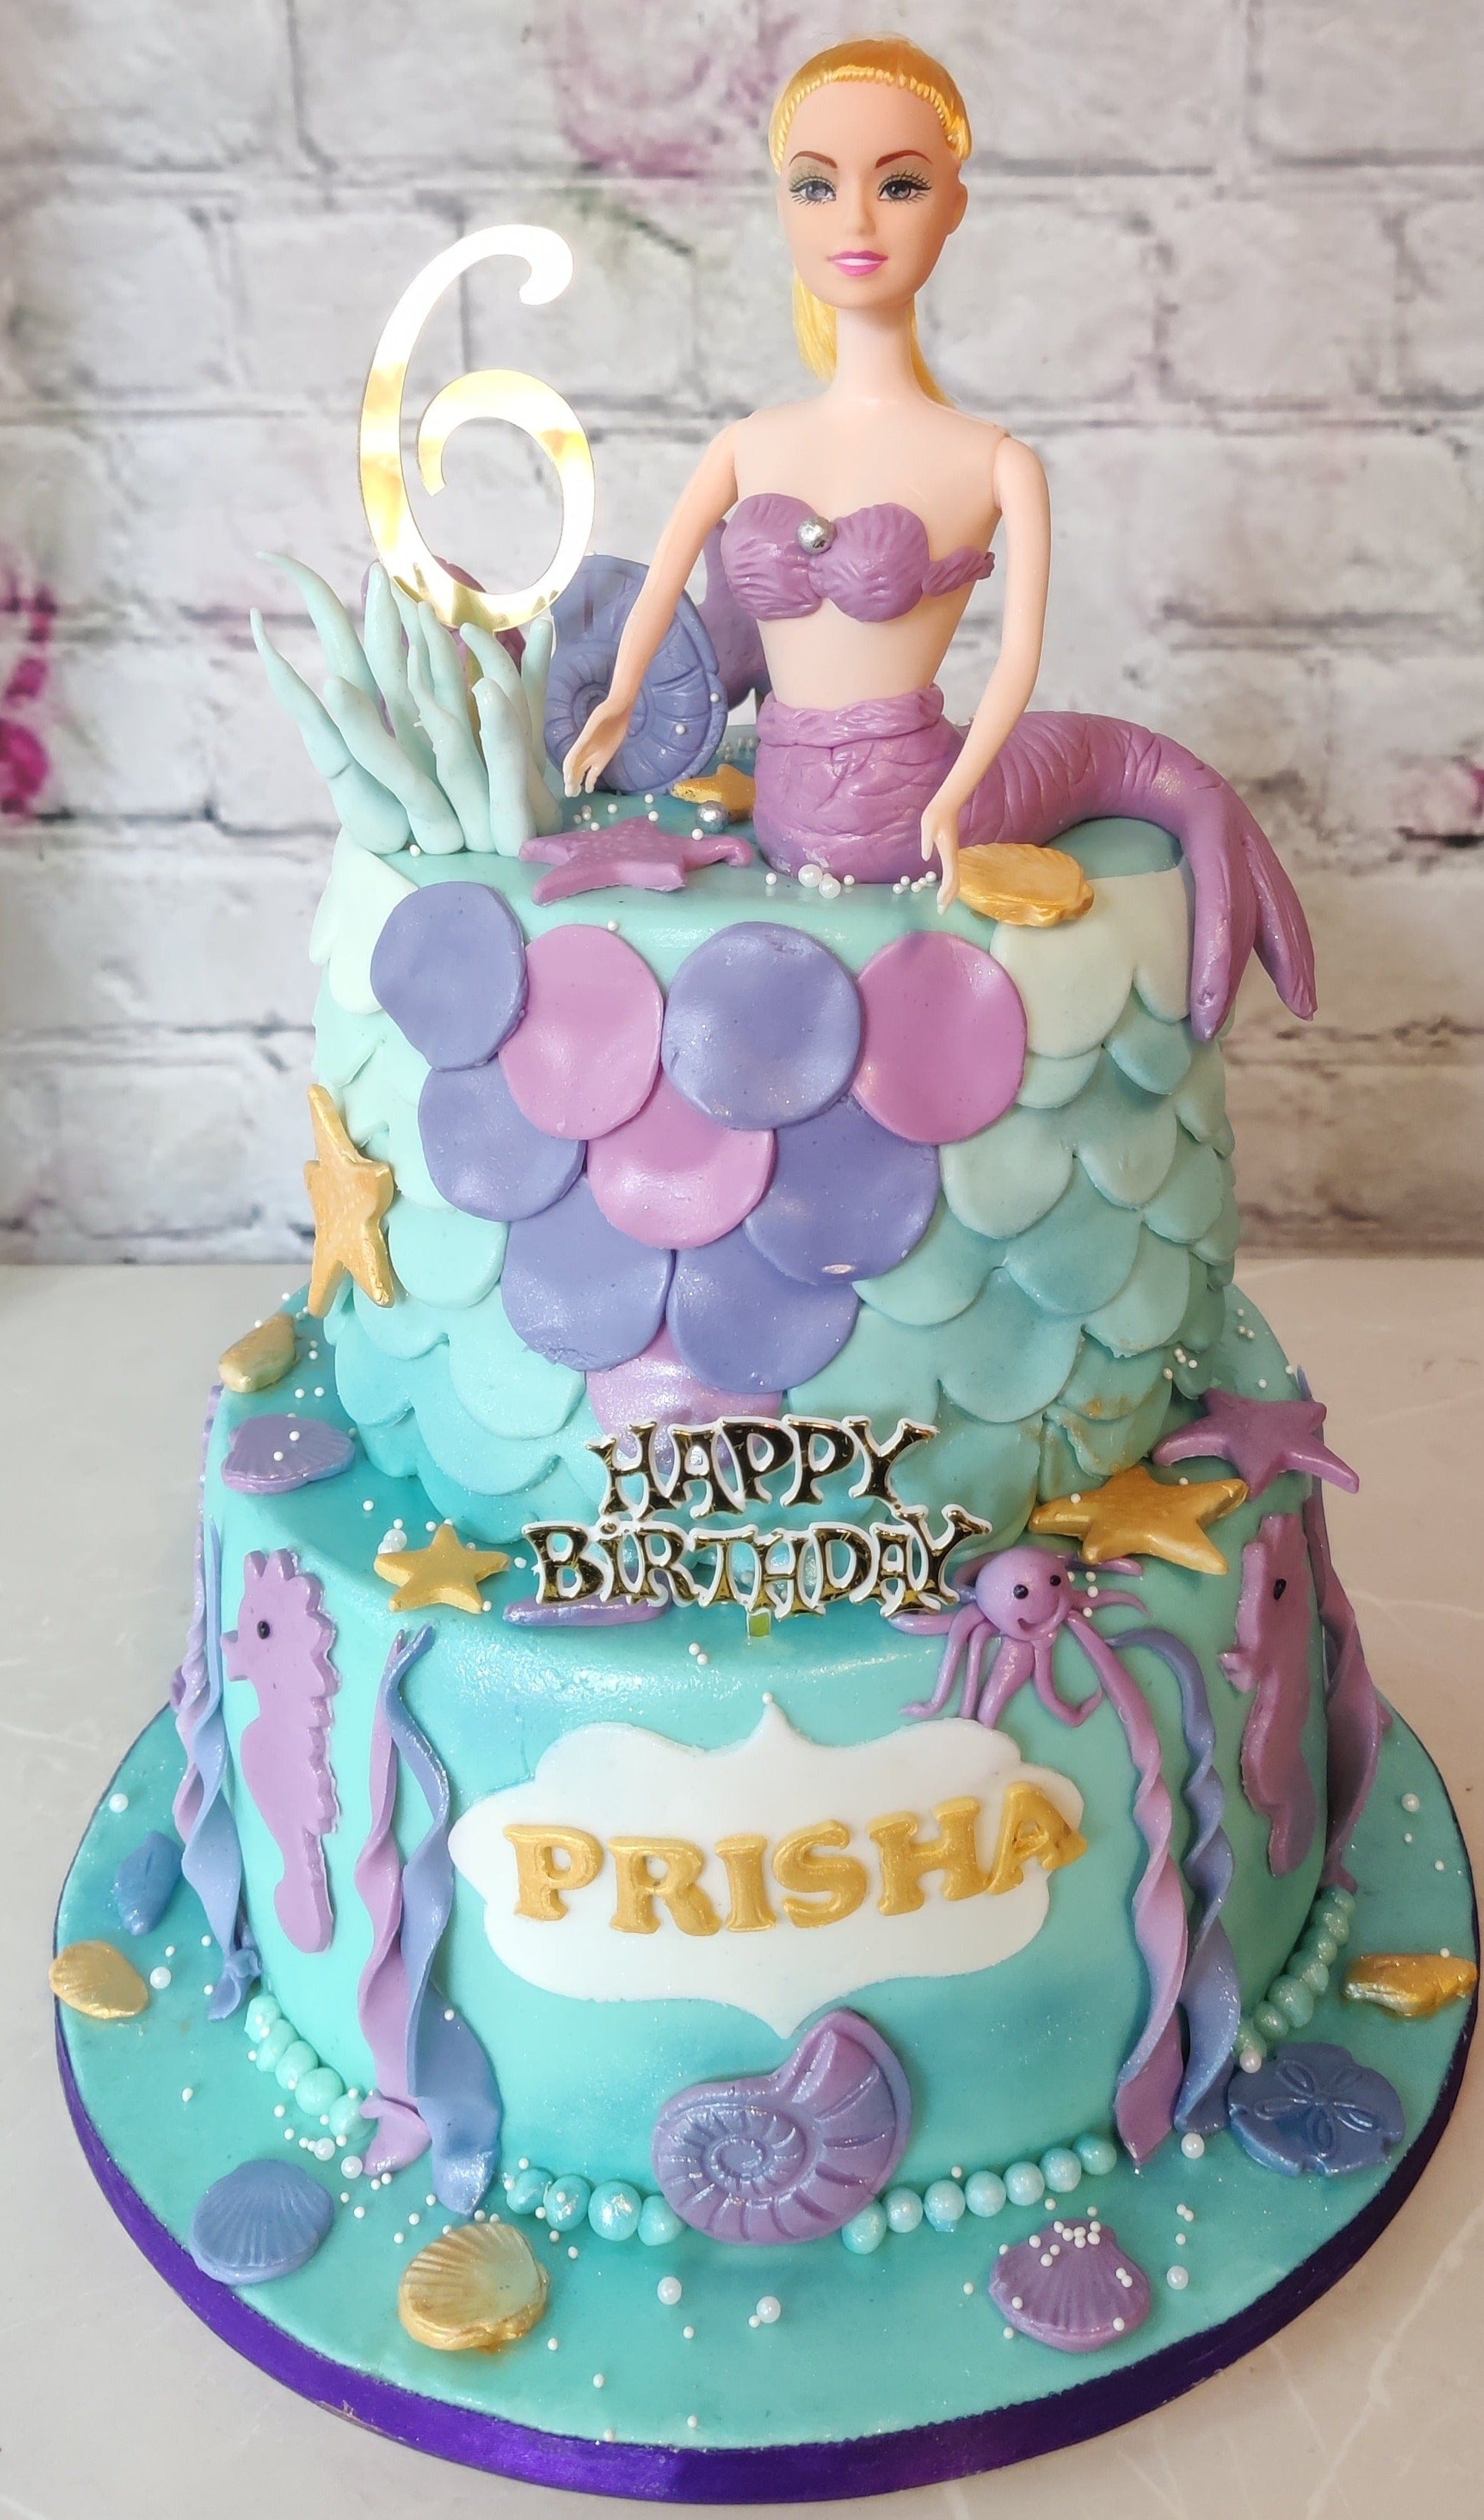 Princess Barbie (doll) Birthday Cake - Eve's Cakes